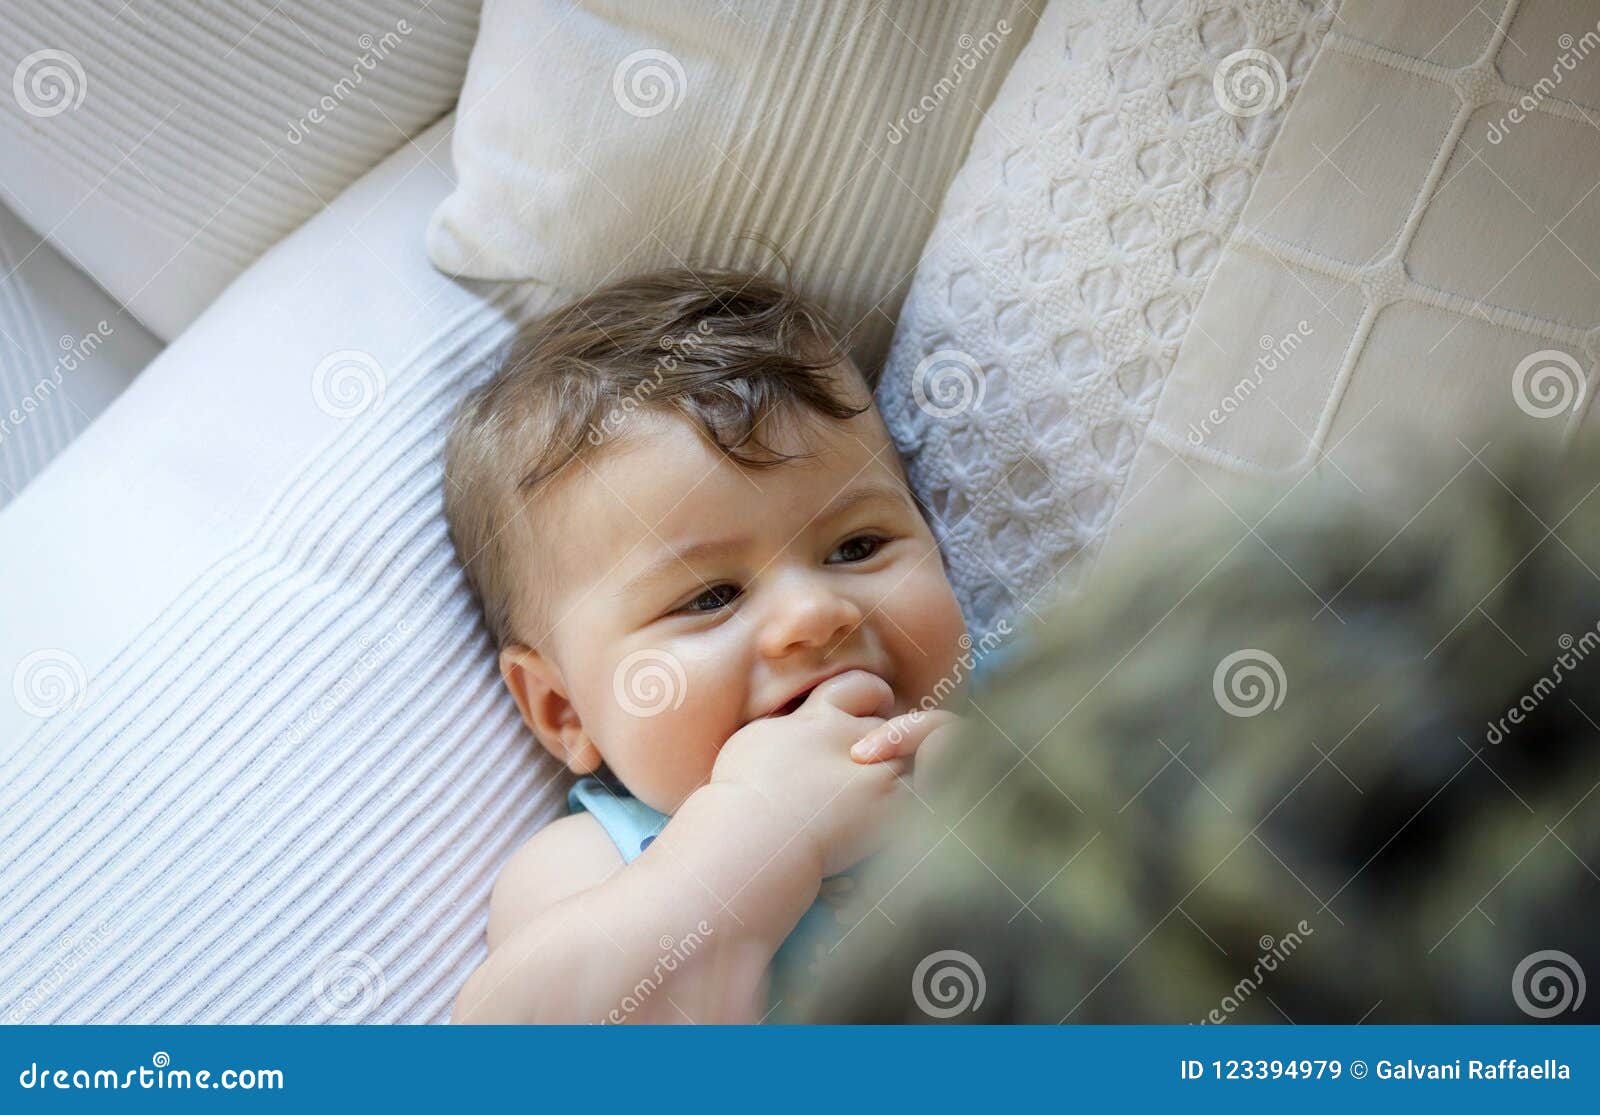 互动男婴放下顶头的画象微笑和. 微笑和互动与妈妈的男婴放下顶头画象